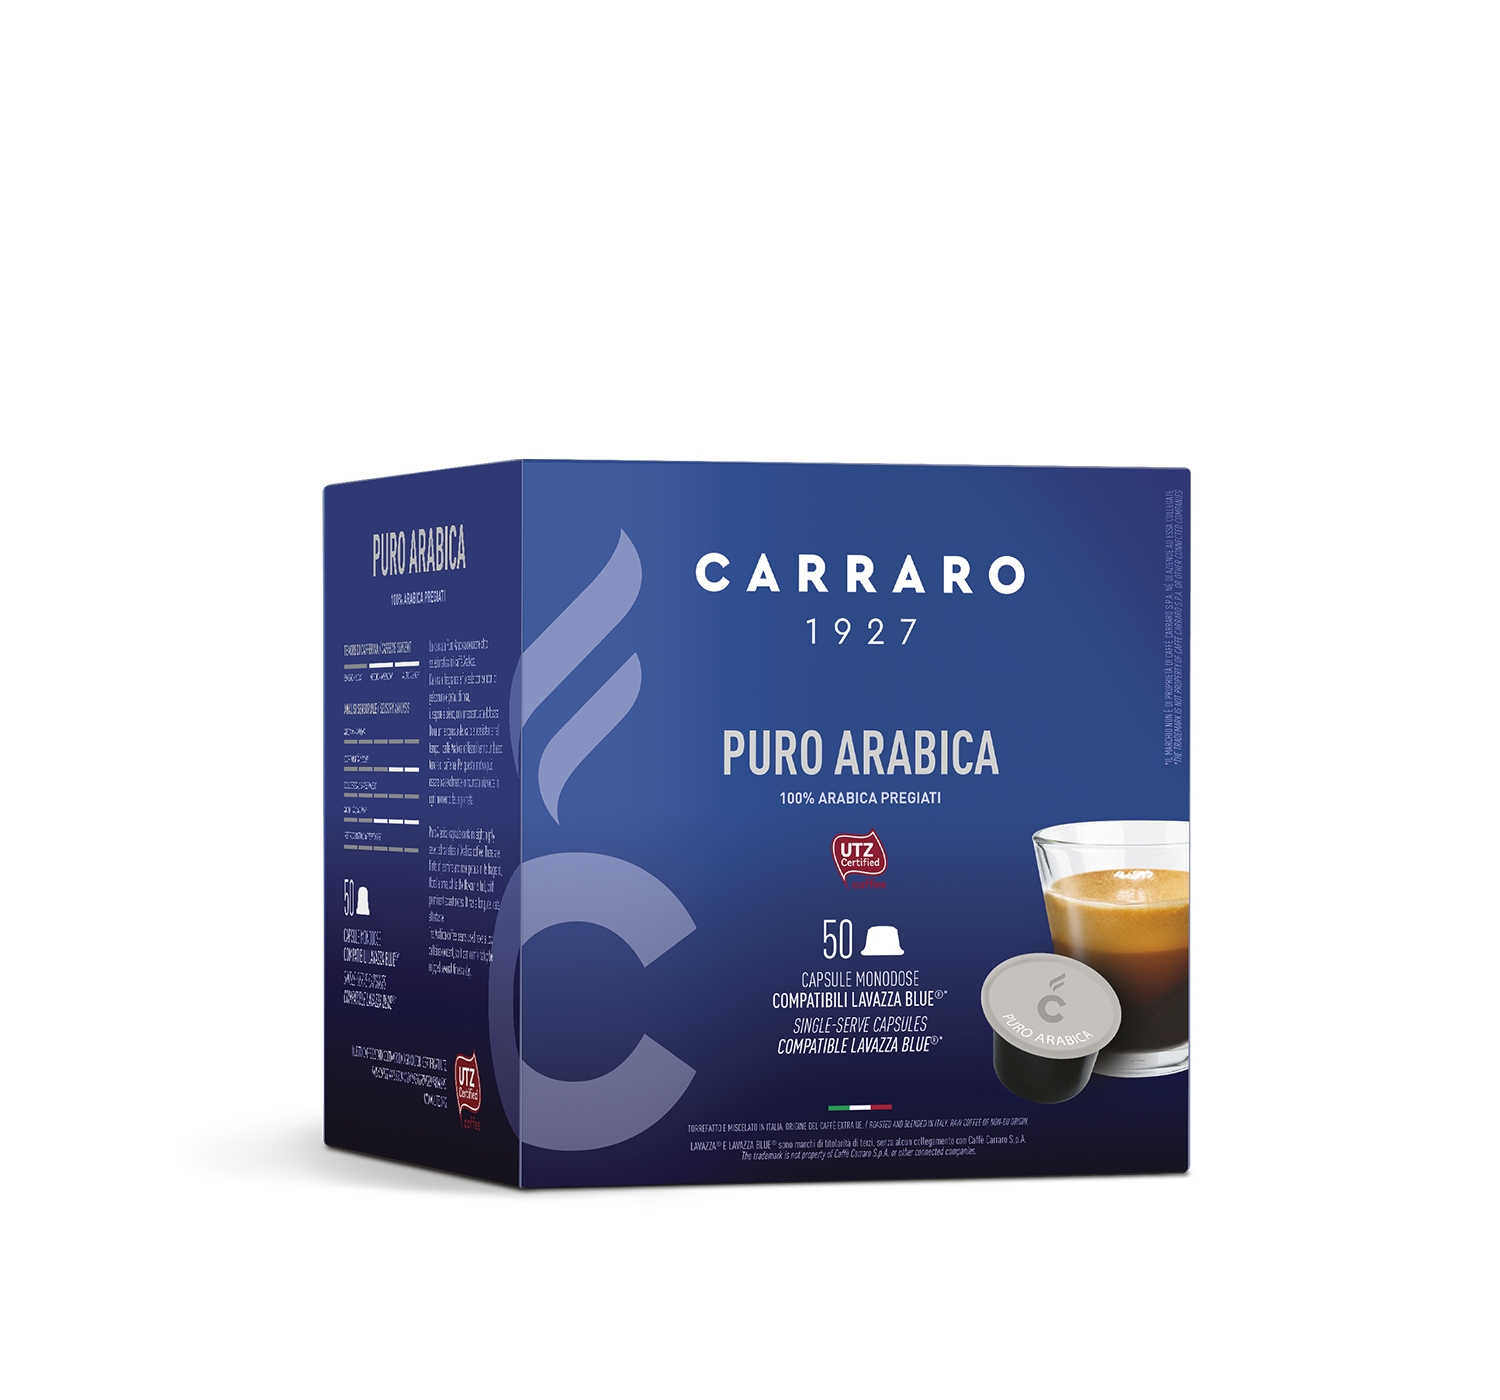 Casa - Puro Arabica – 50 capsule compatibili Lavazza Blue®* - Shop online Caffè Carraro